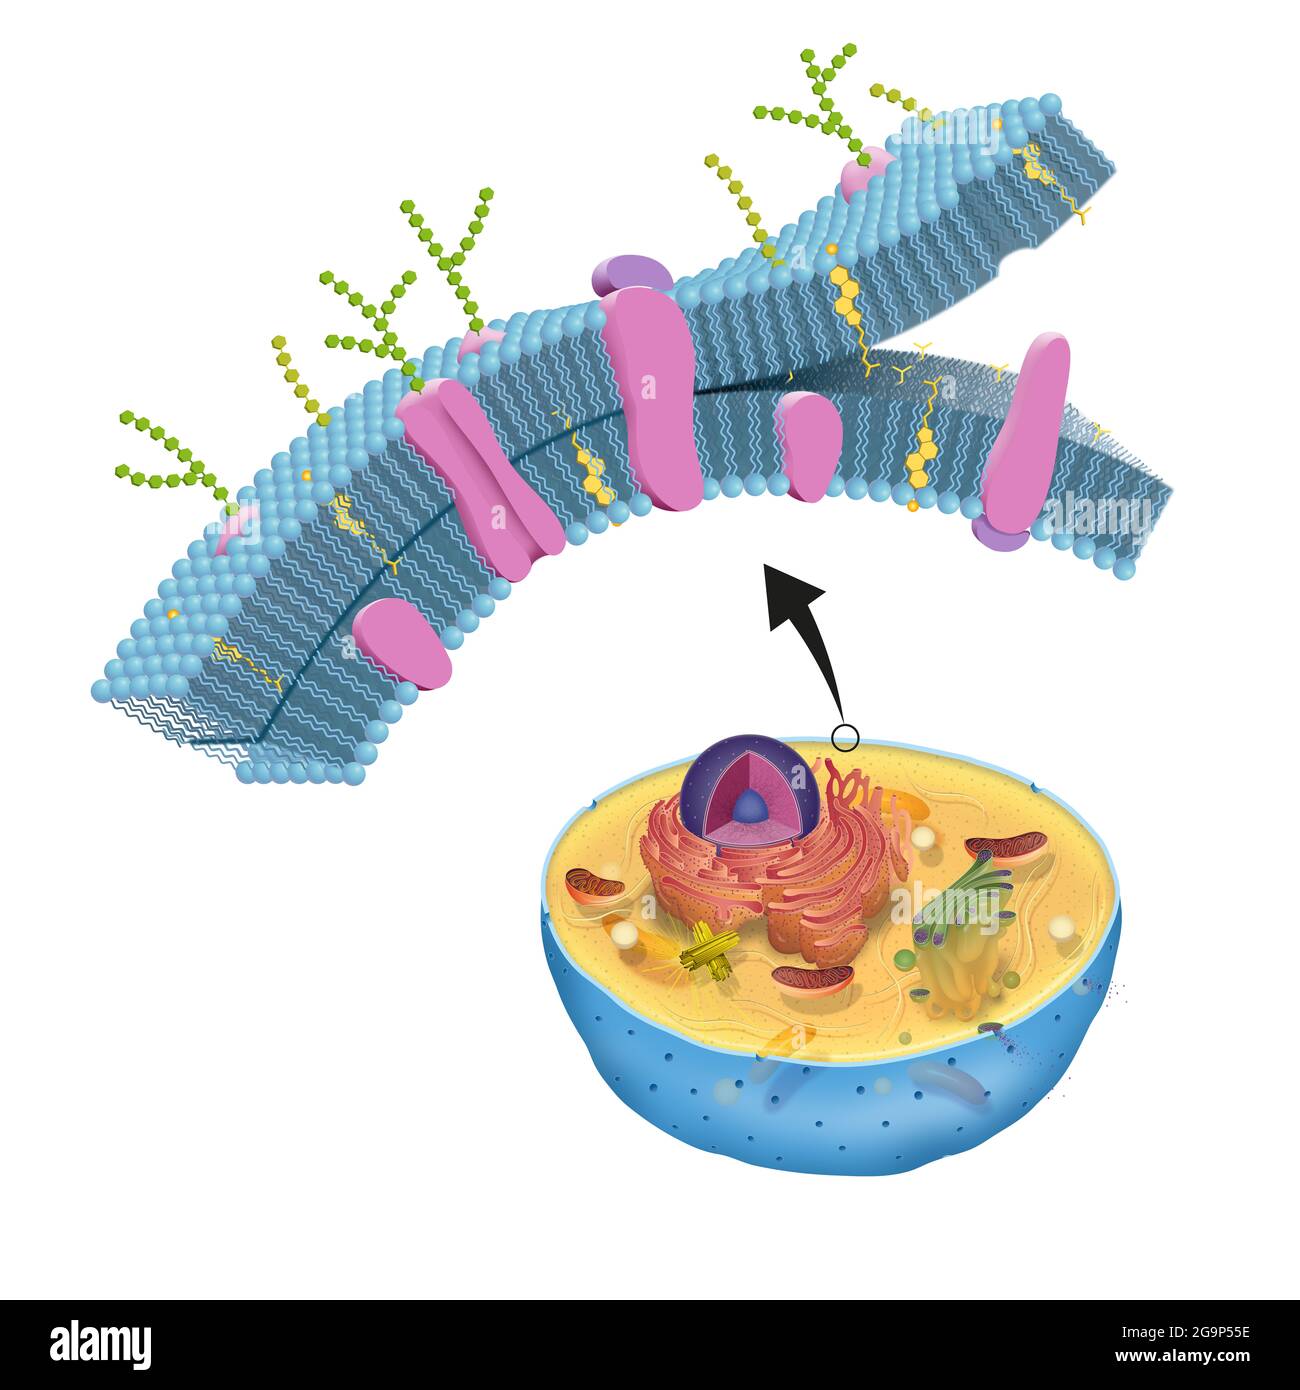 La membrane cellulaire, également appelée membrane plasmique, se trouve dans toutes les cellules et sépare l'intérieur de la cellule de l'environnement extérieur Banque D'Images